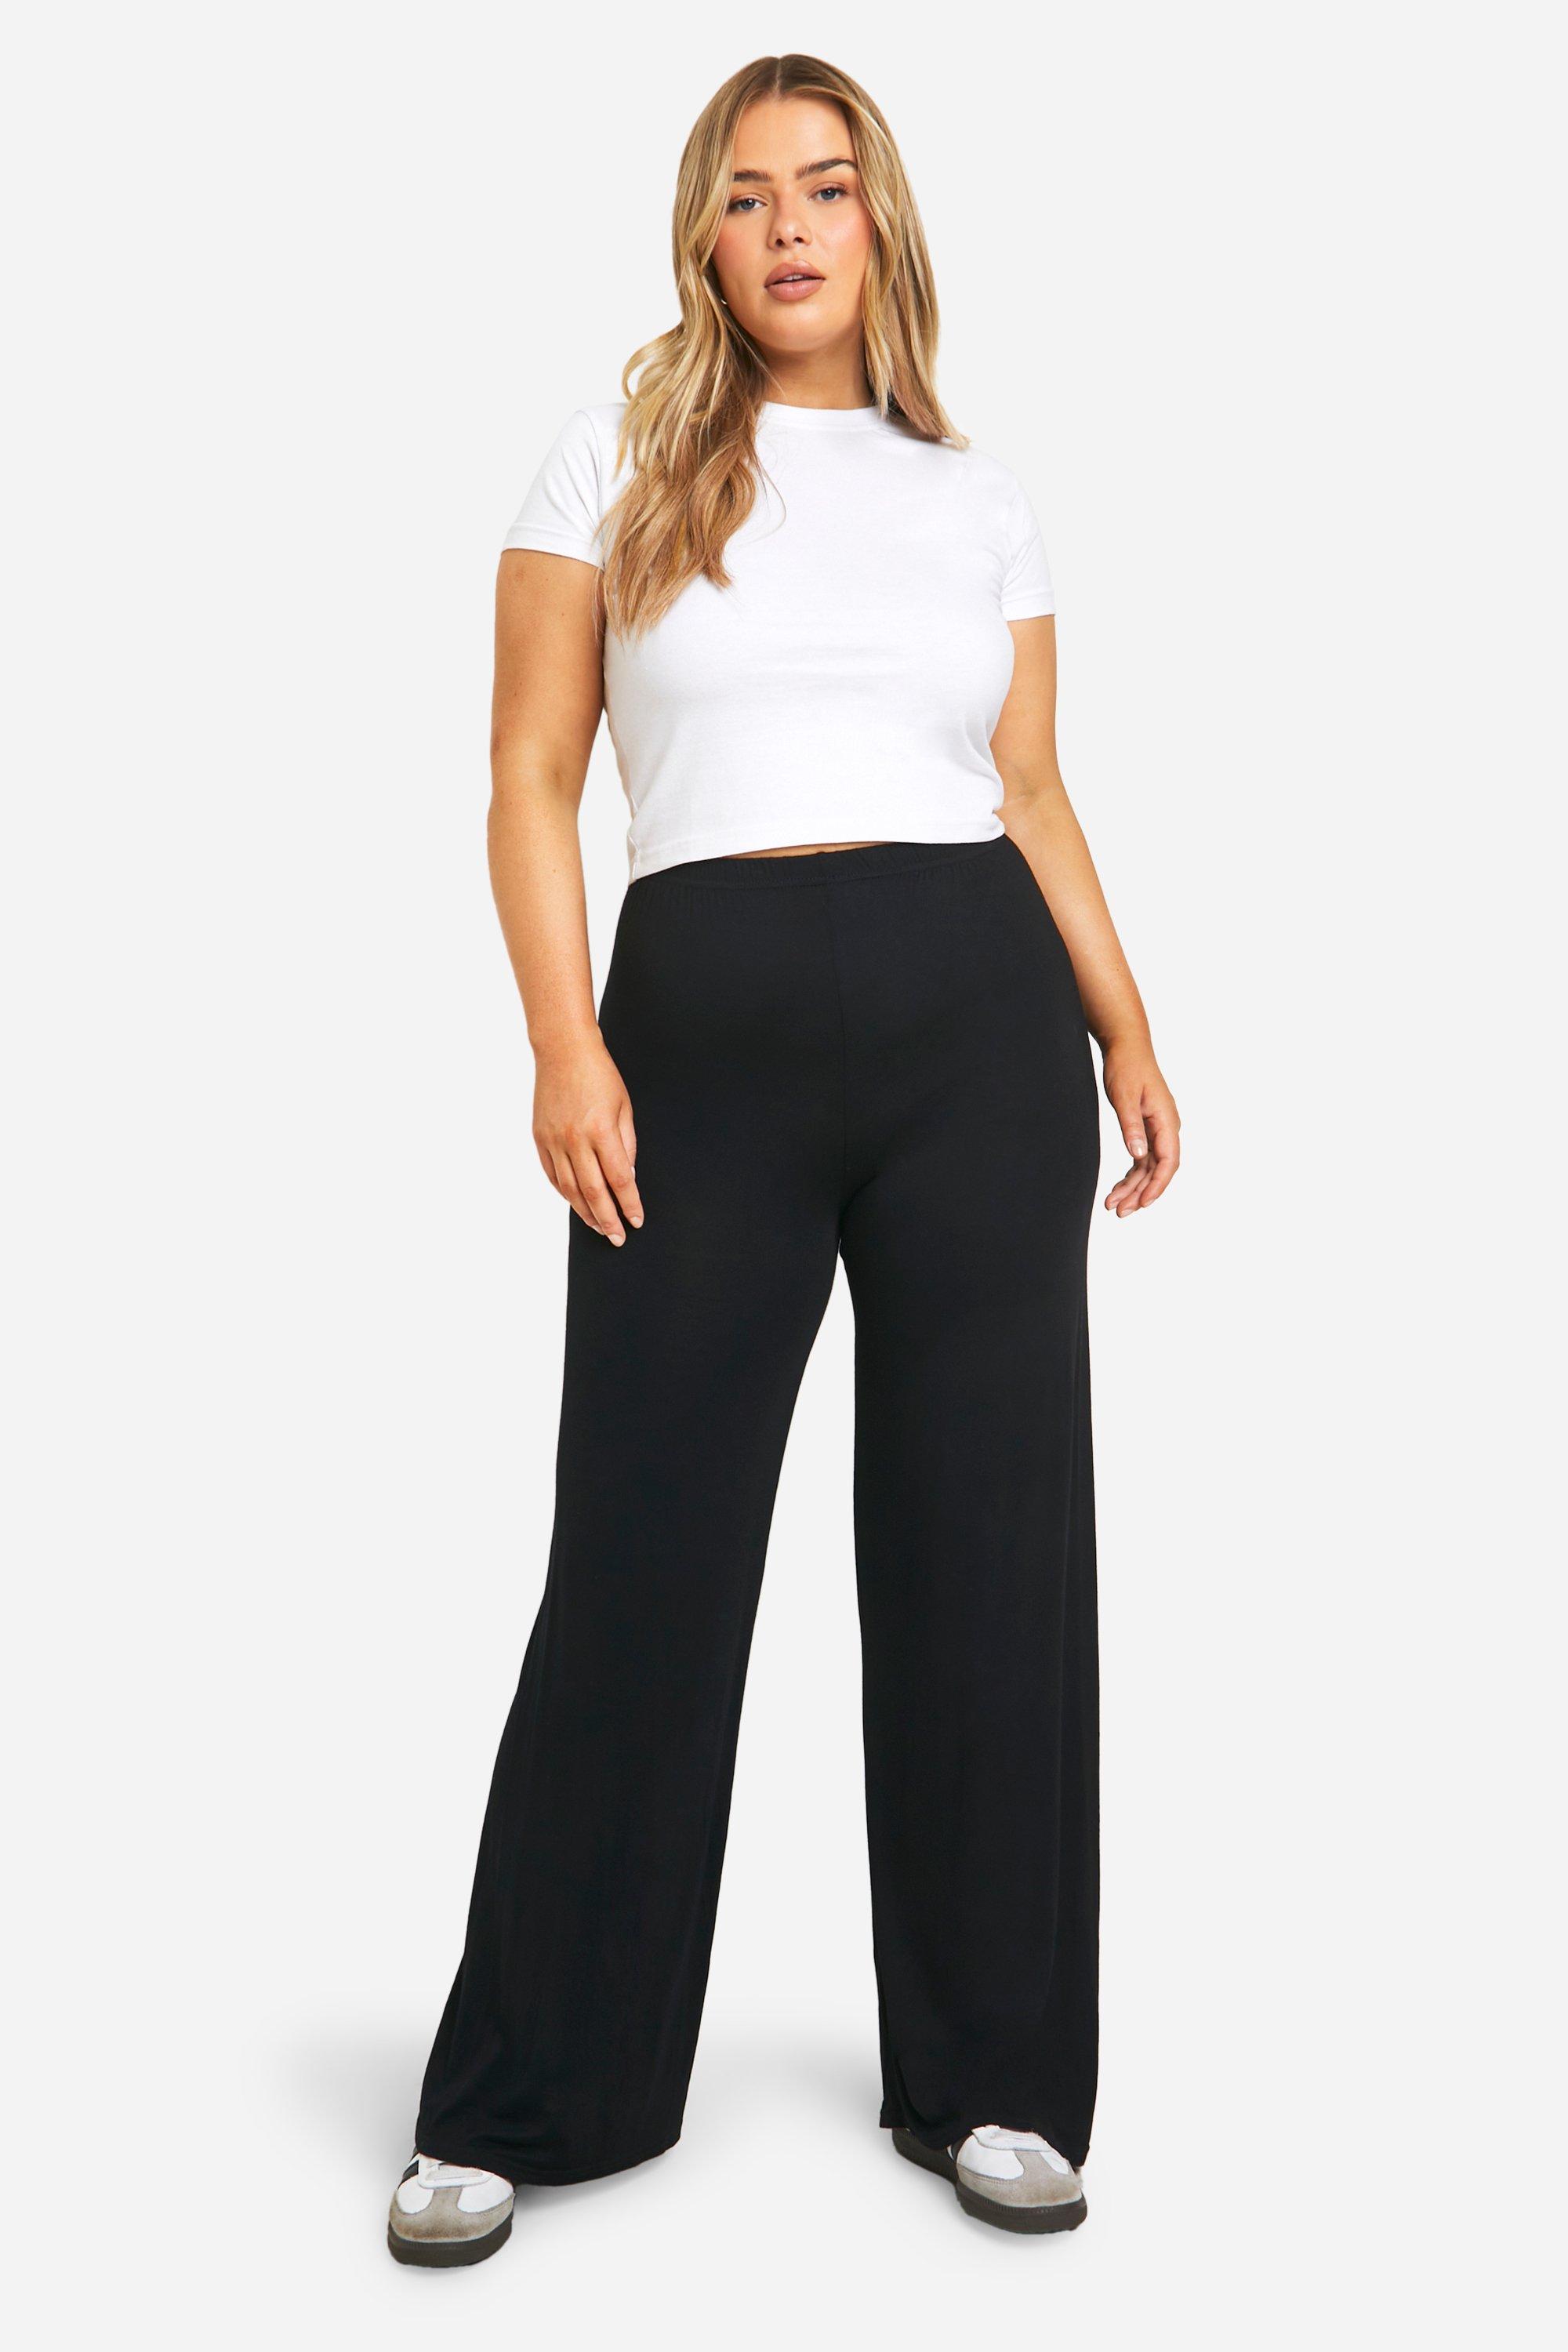 XL- 5XL Best Stretch Flare Jeans Plus Size - Plus Size Pants